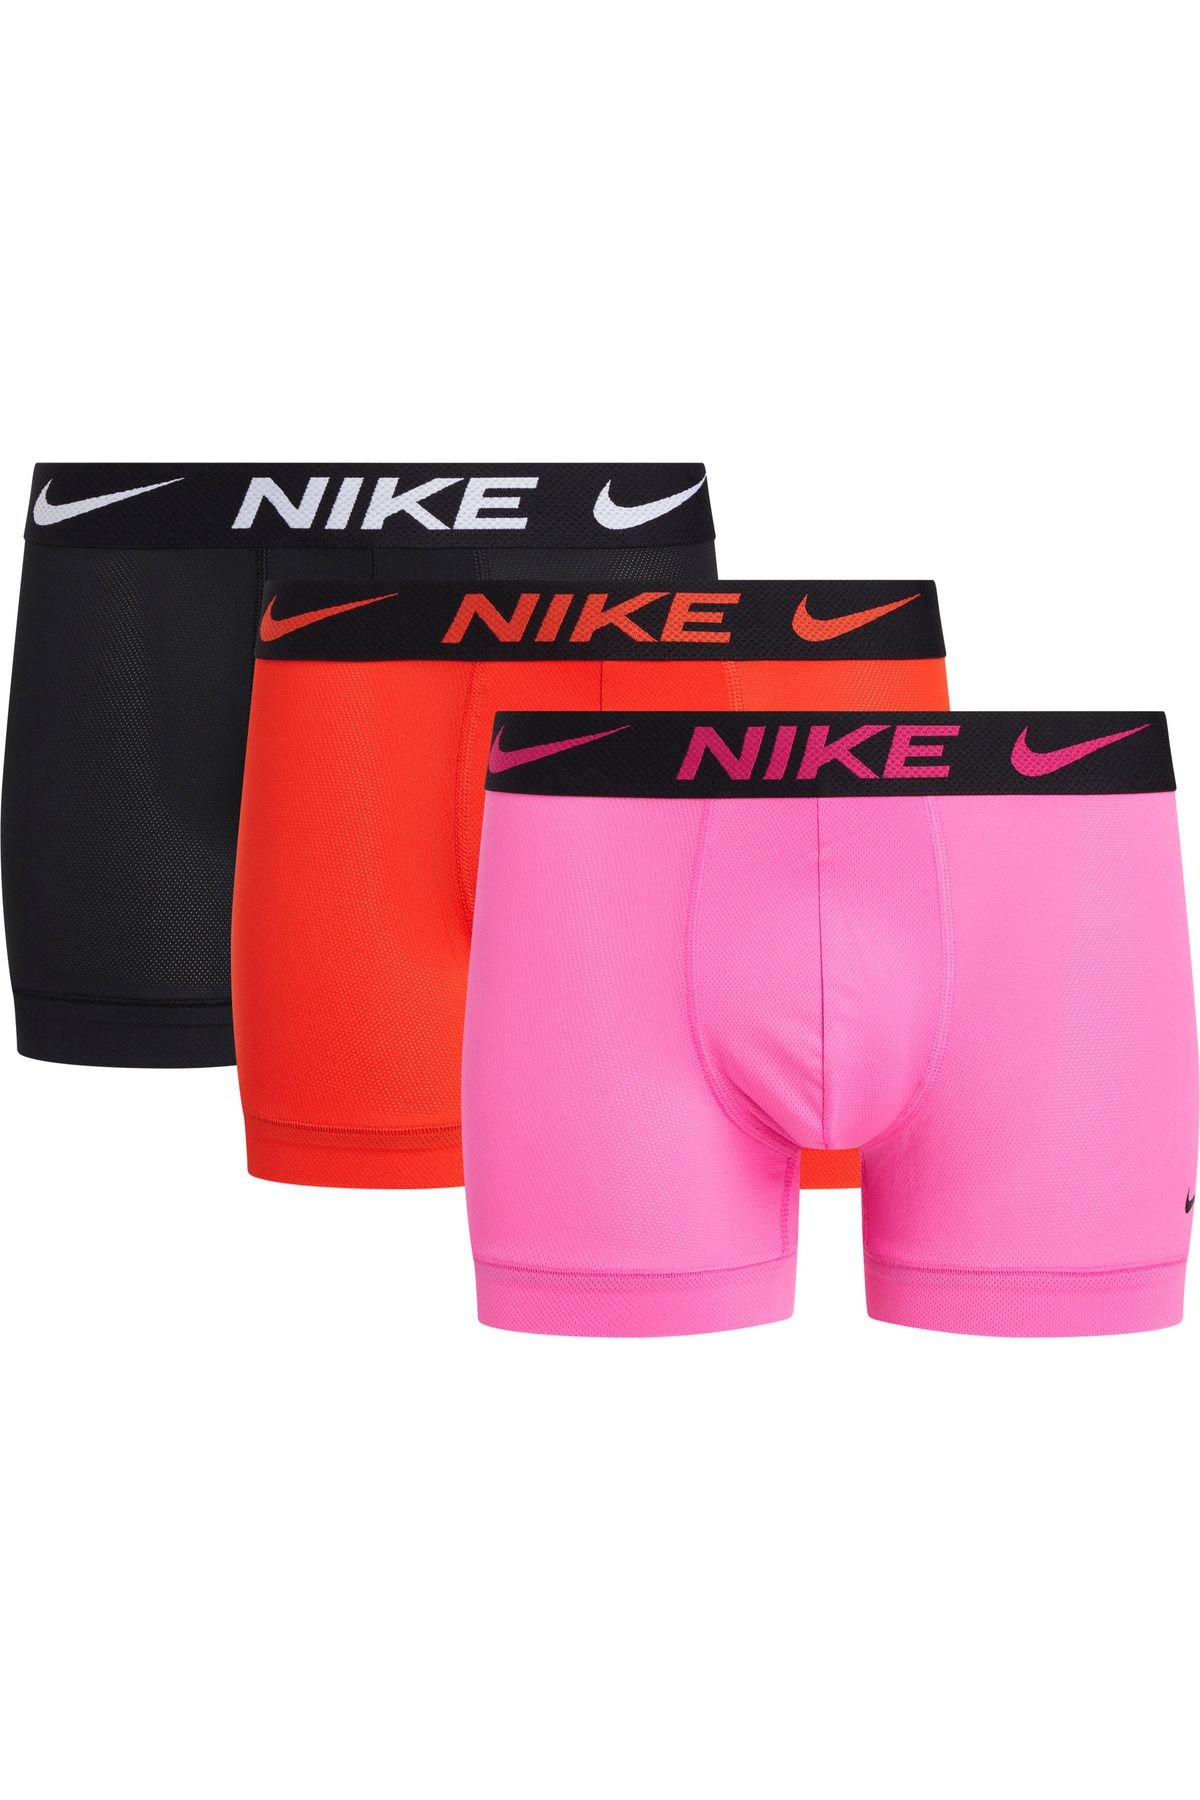 Nike Erkek Marka Logolu Elastik Bantlı Günlük Kullanıma Uygun Pembe-Kırmızı-Siyah Boxer 0000KE1224-K0L